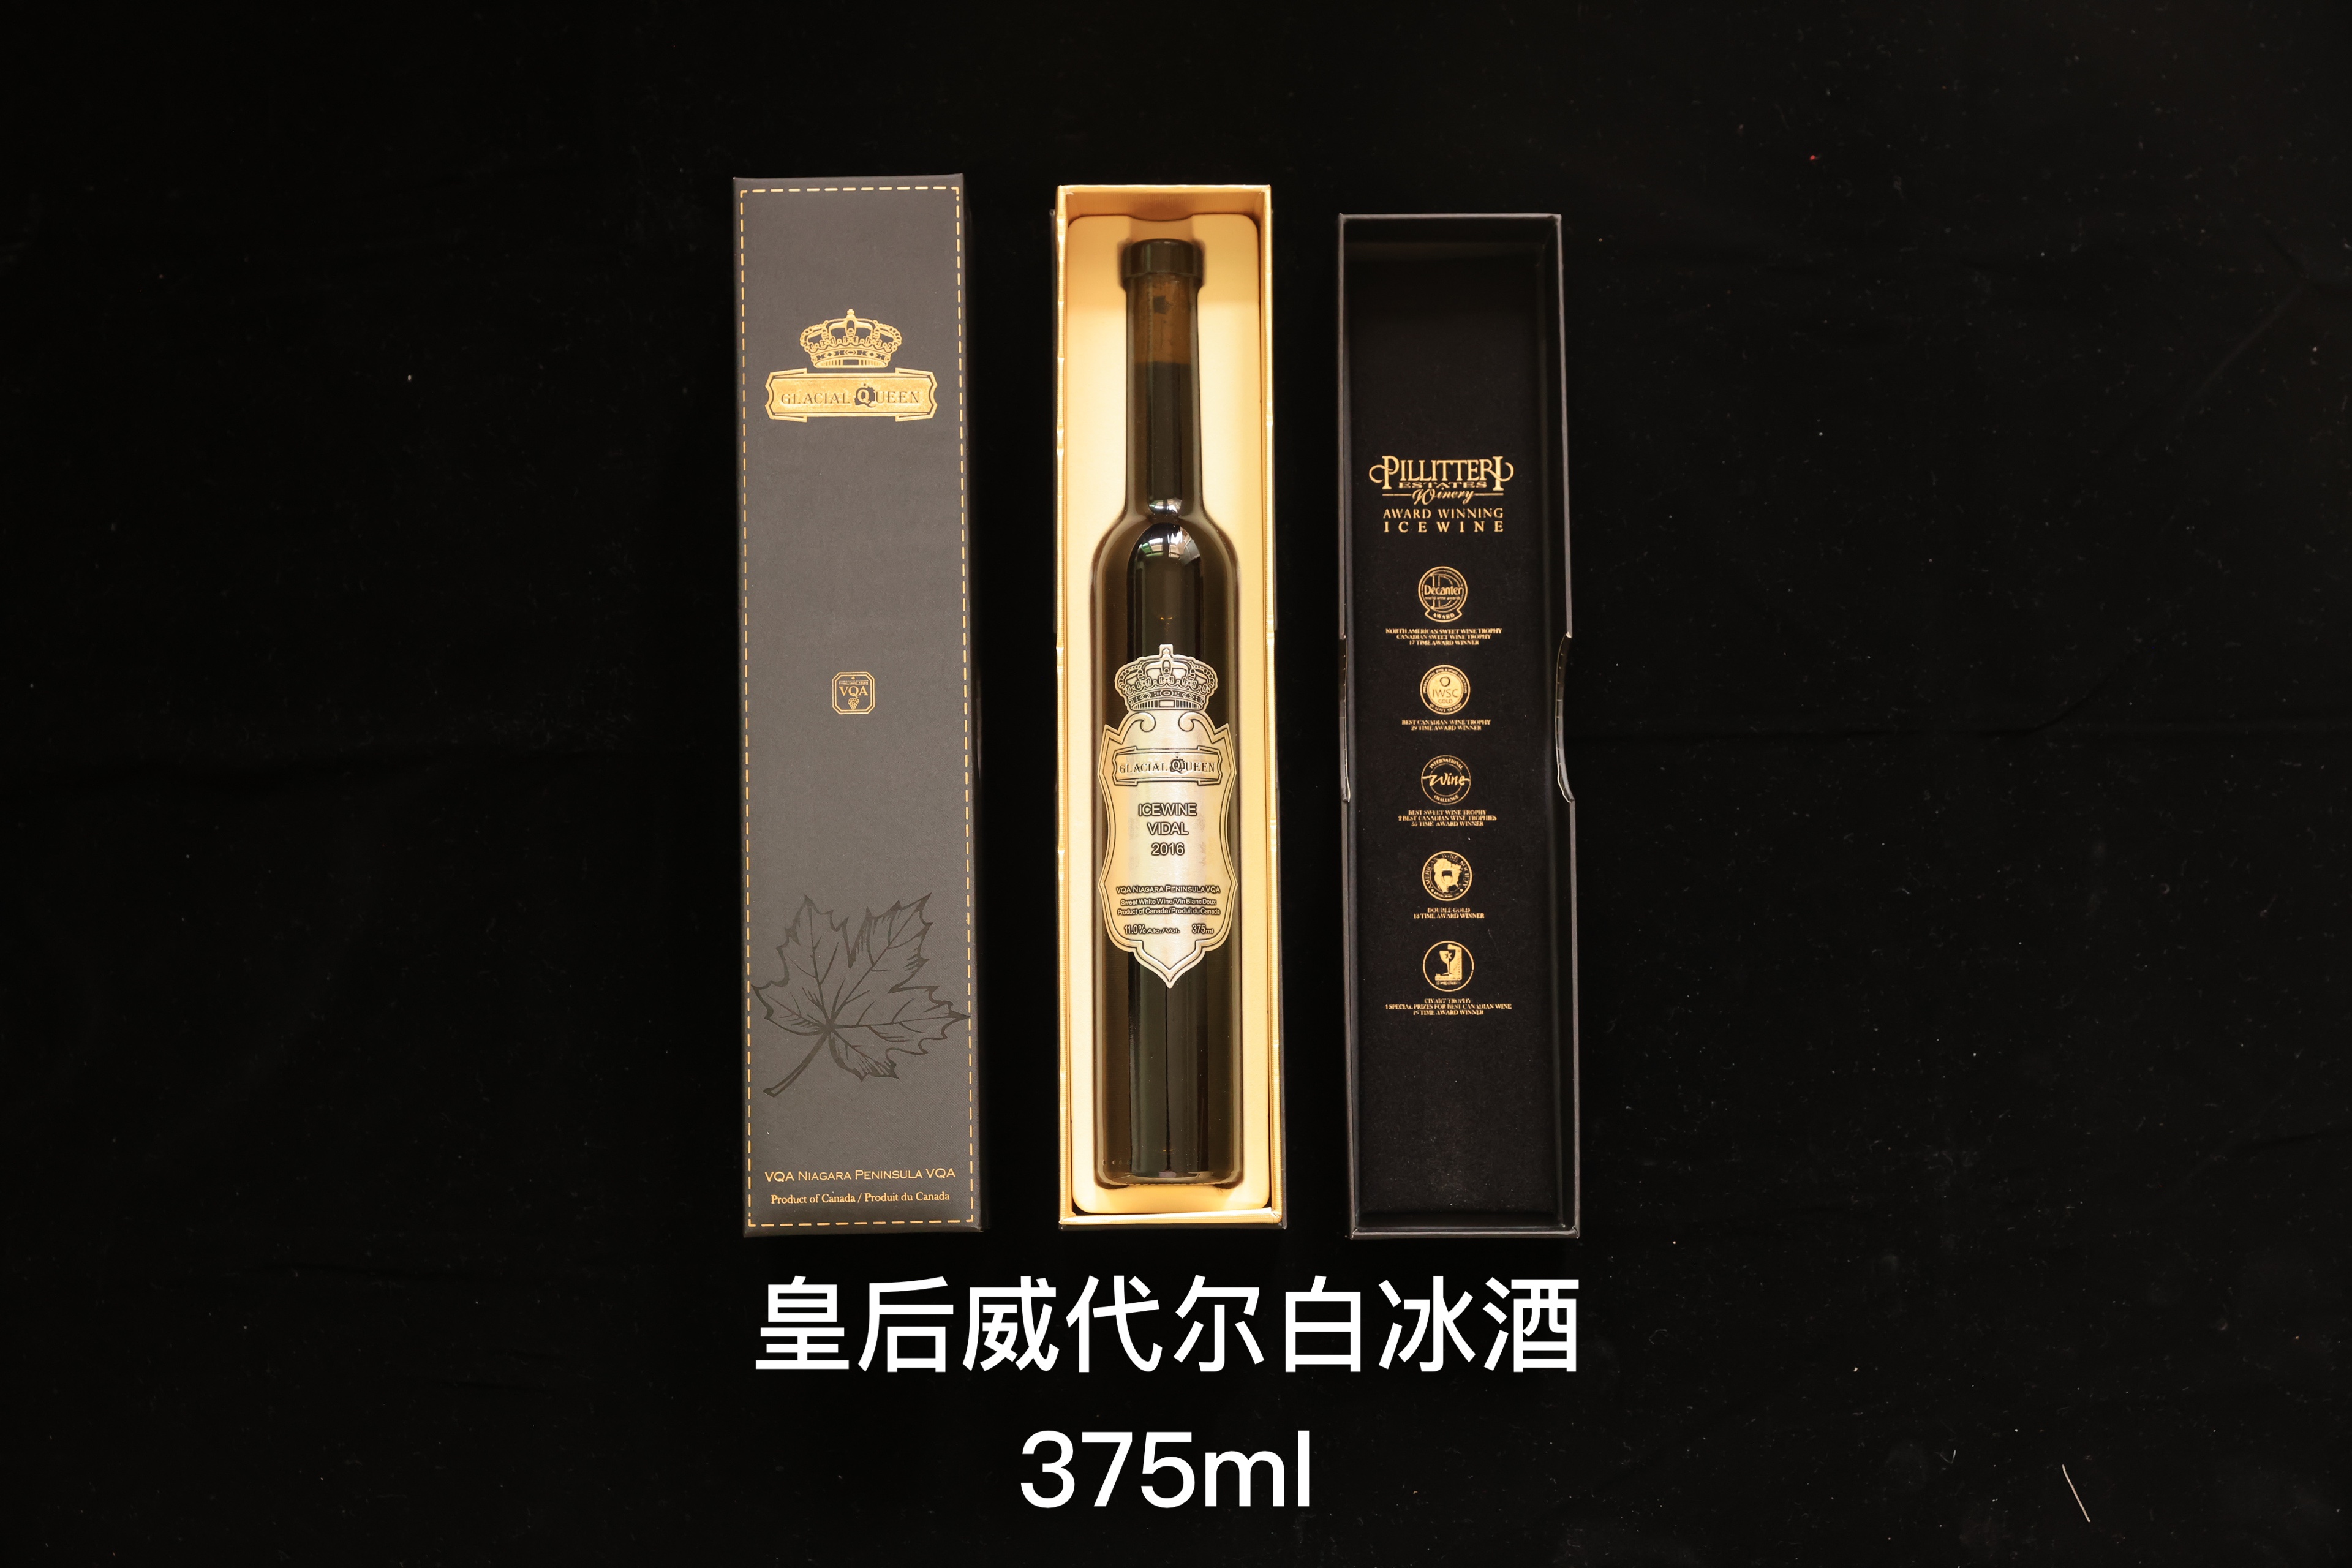 【中国现货】加拿大Pillitteri派利特瑞皇后威代尔白冰酒375ml